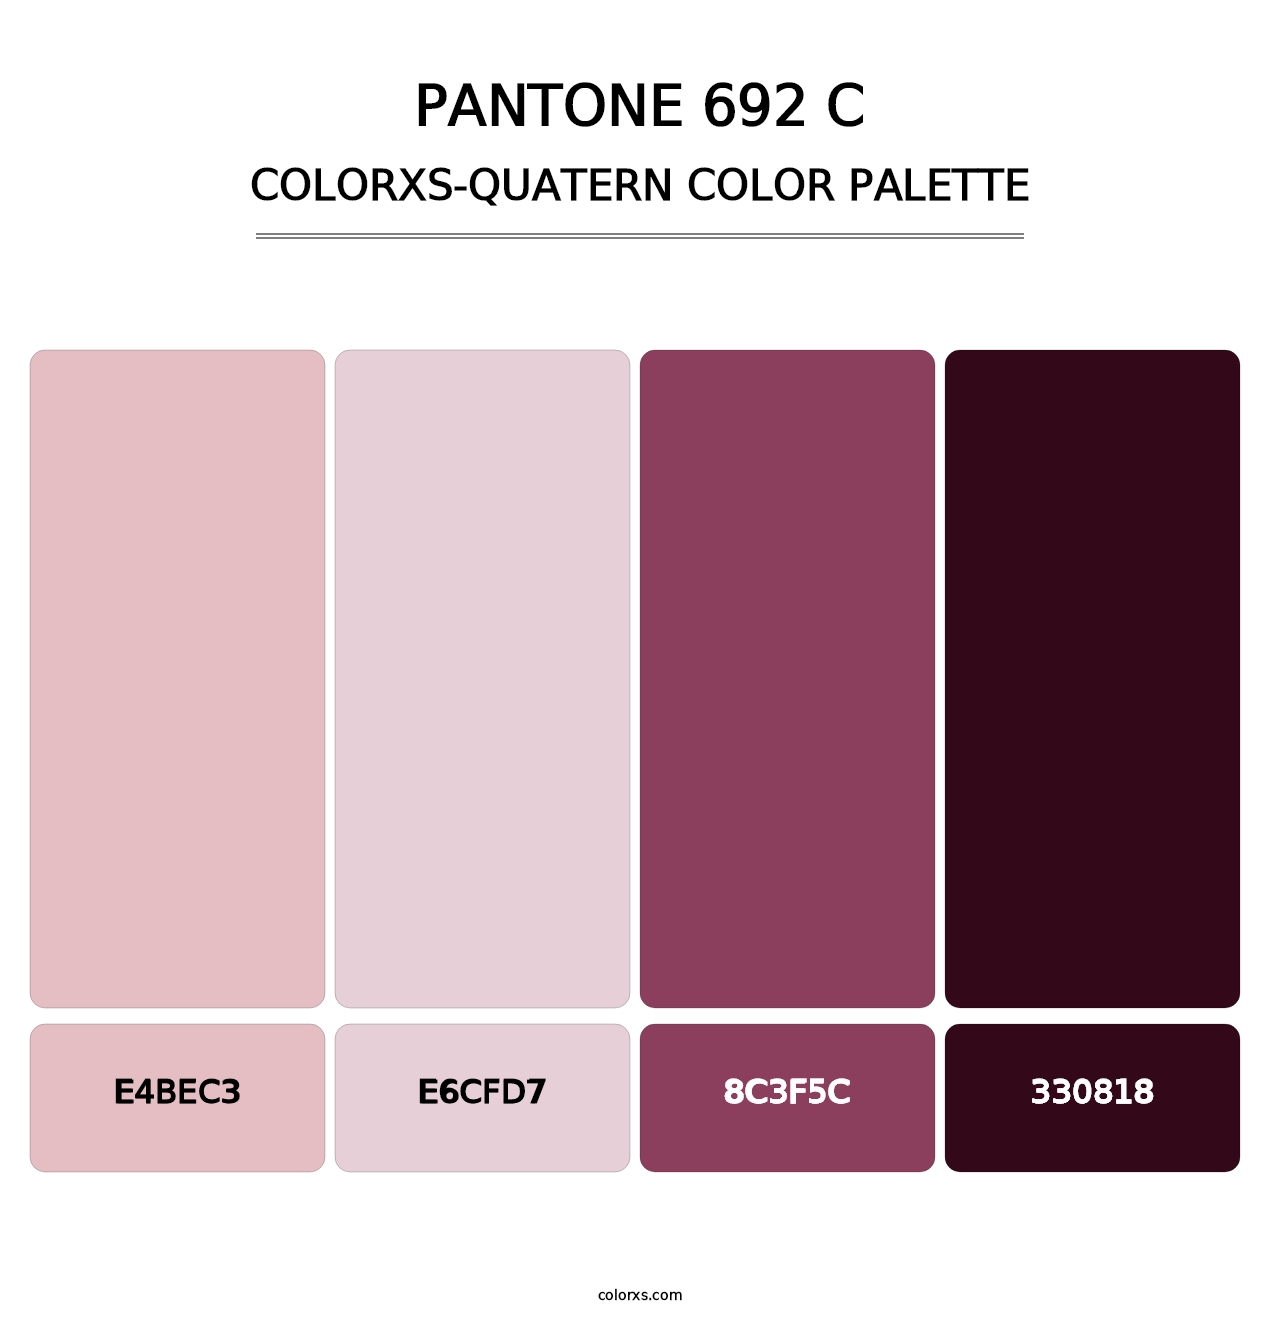 PANTONE 692 C - Colorxs Quatern Palette